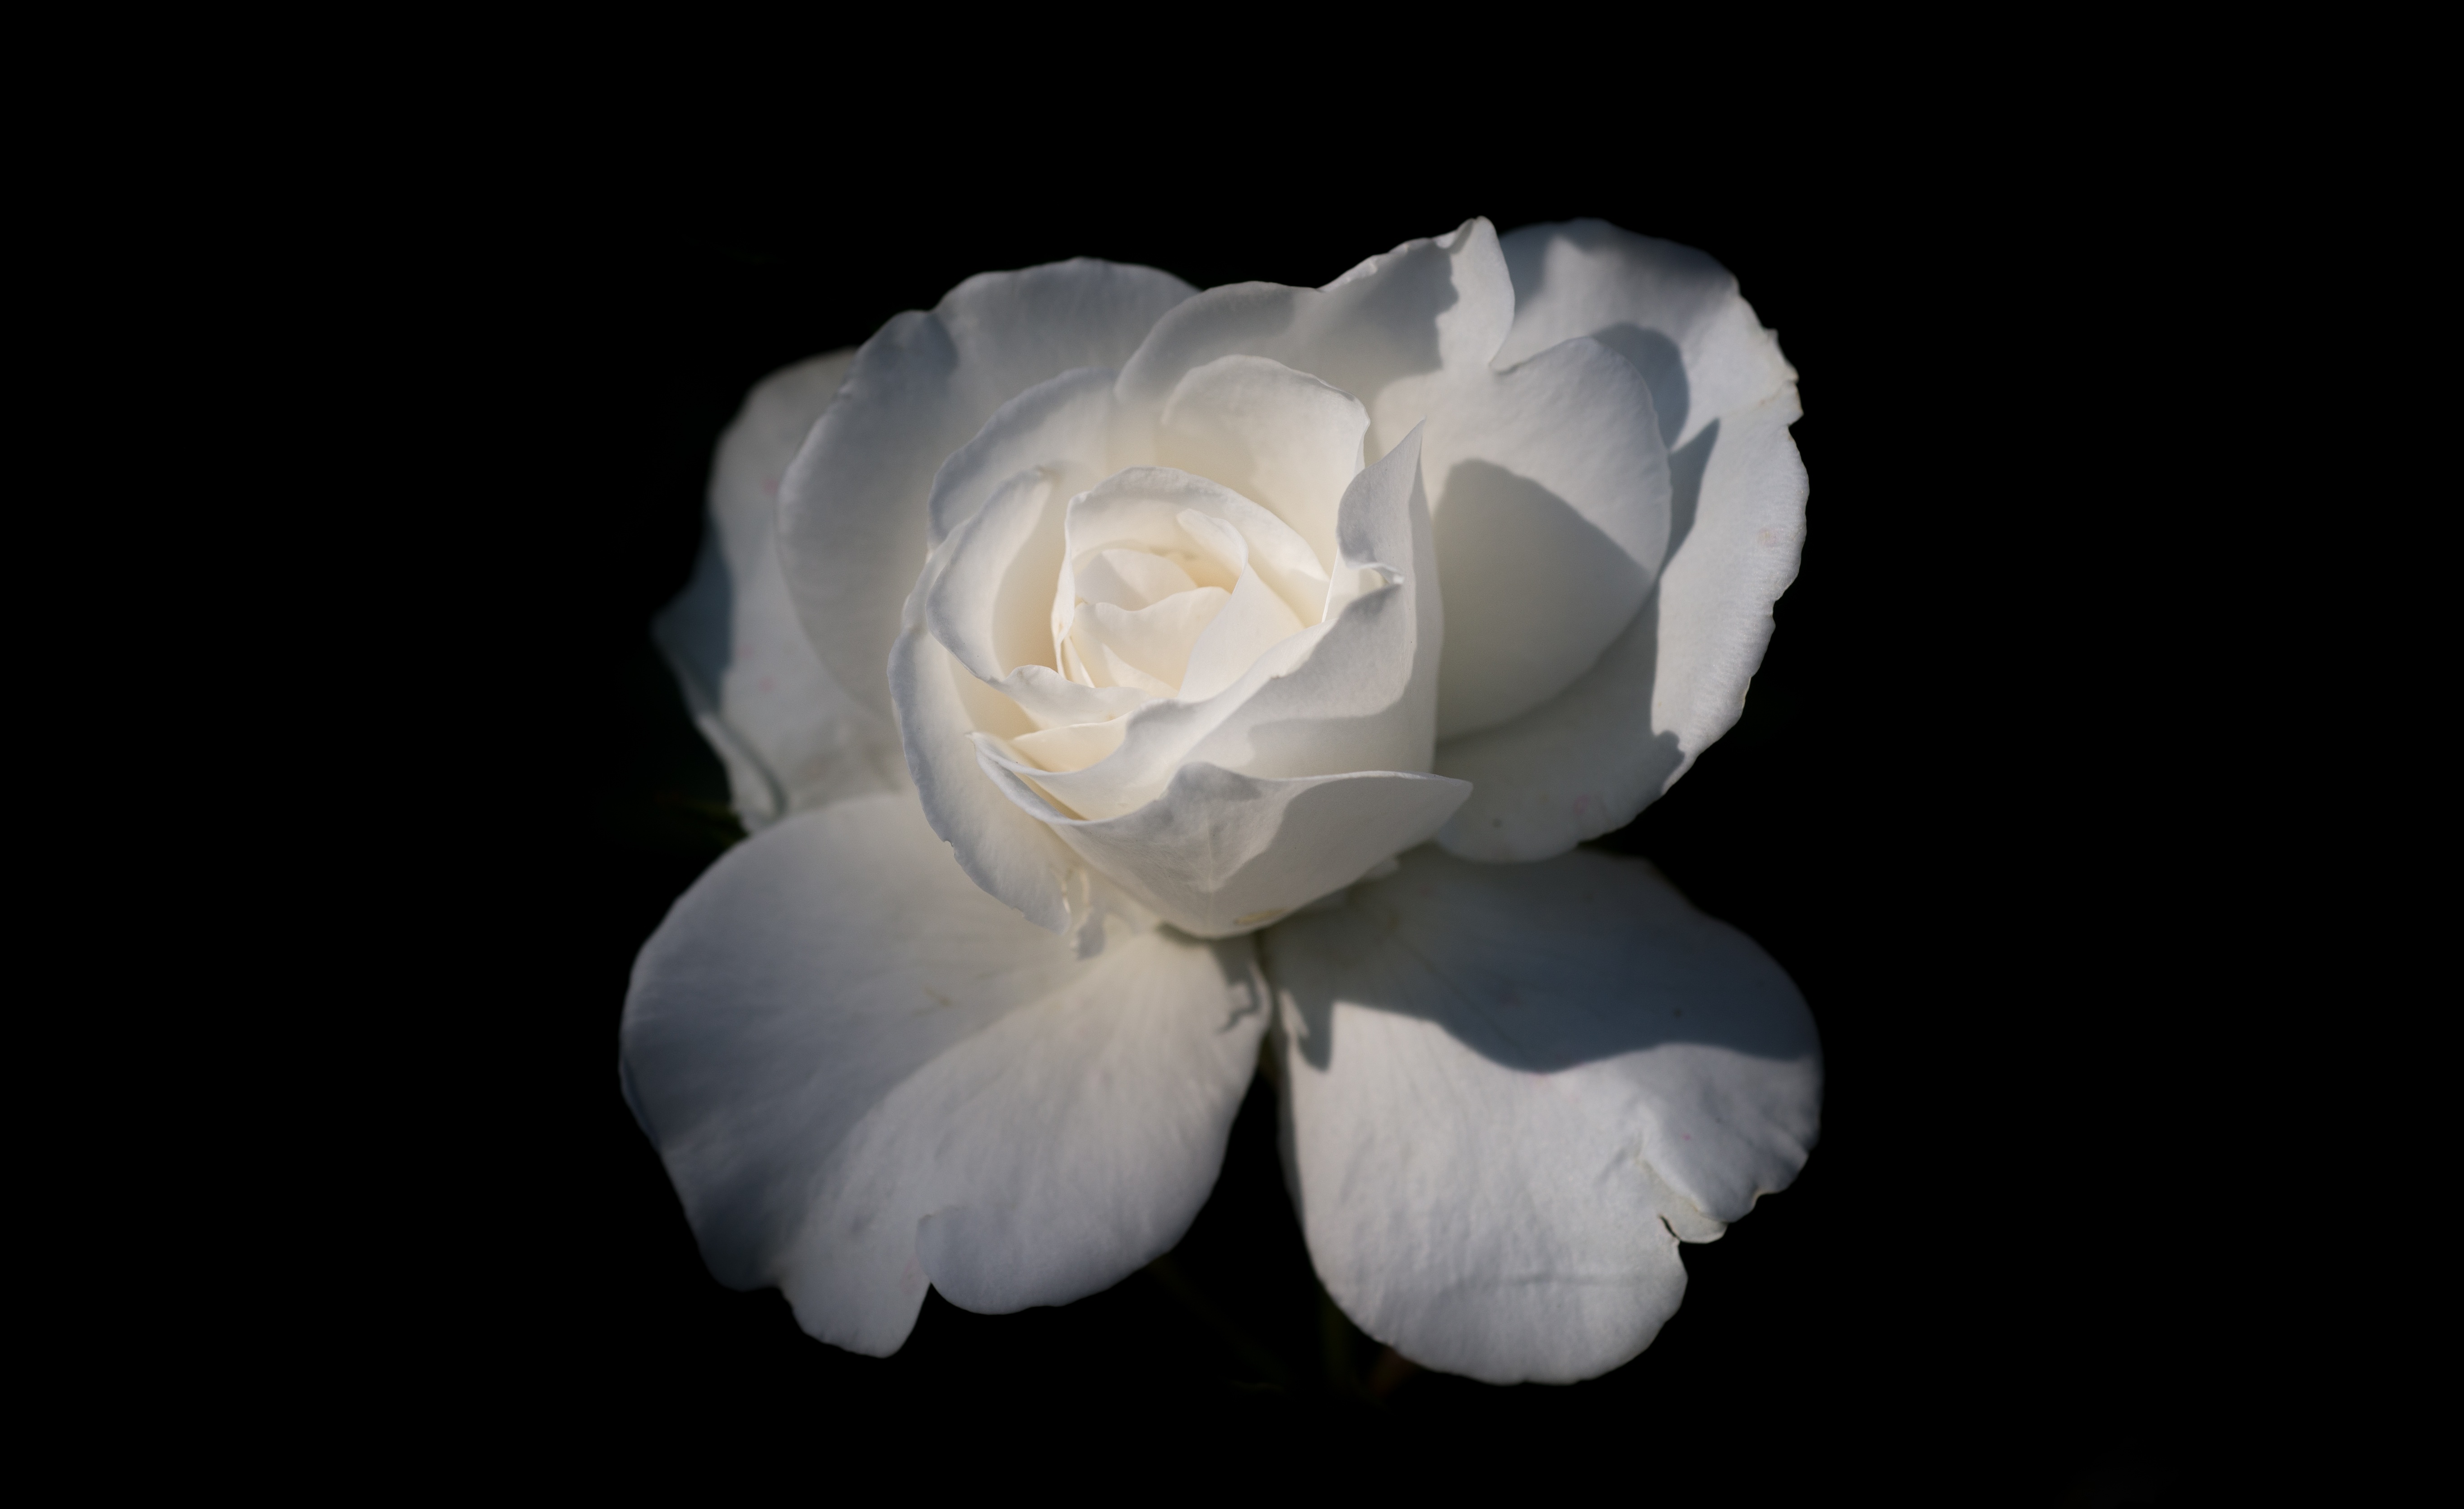 Картинка Розы белая цветок вблизи Черный фон роза Белый белые белых Цветы на черном фоне Крупным планом